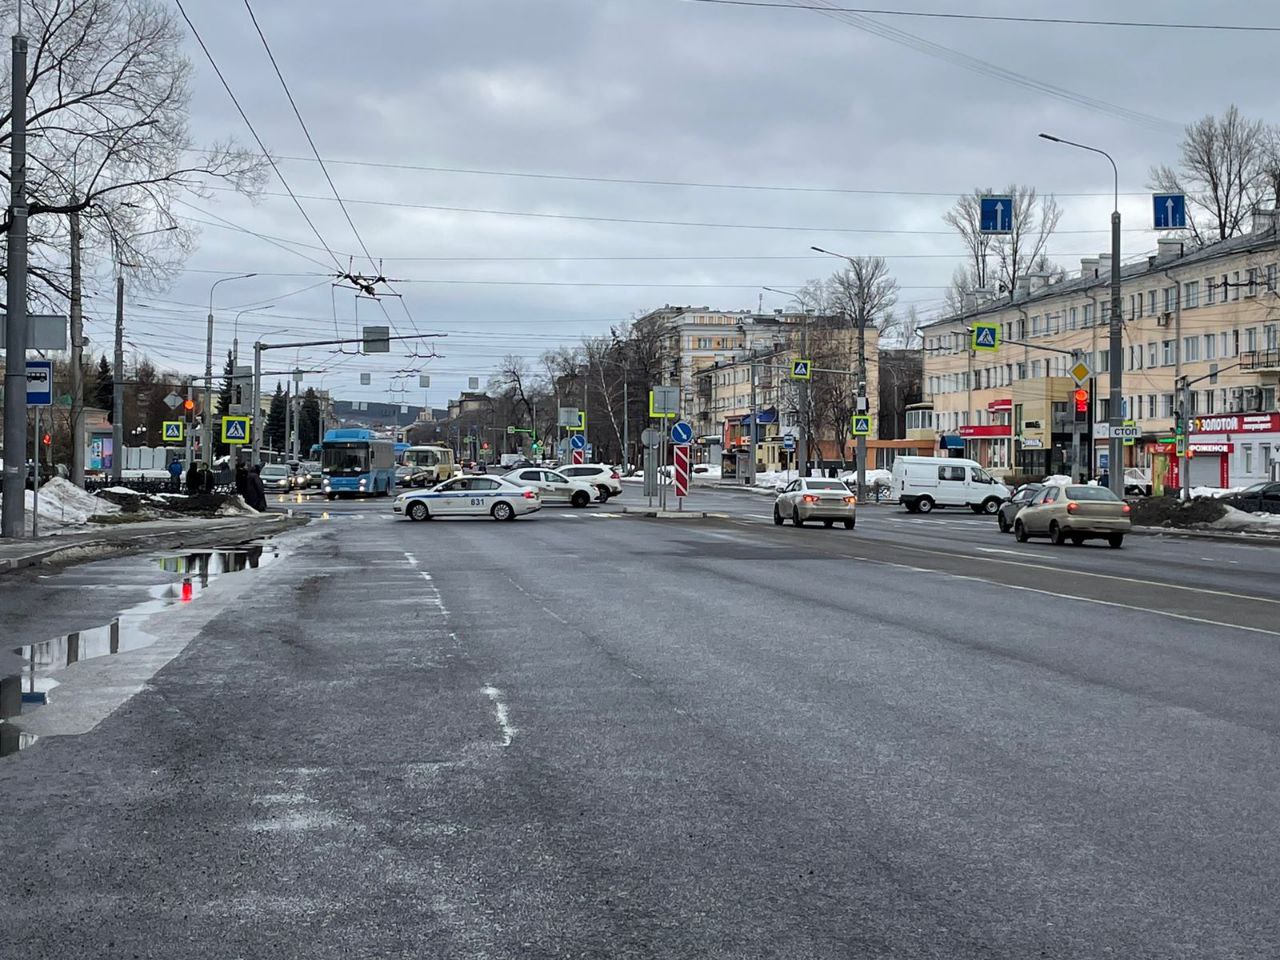 В Новокузнецке перекрыли участок улицы из-за угрозы падения на дорогу листов кровли